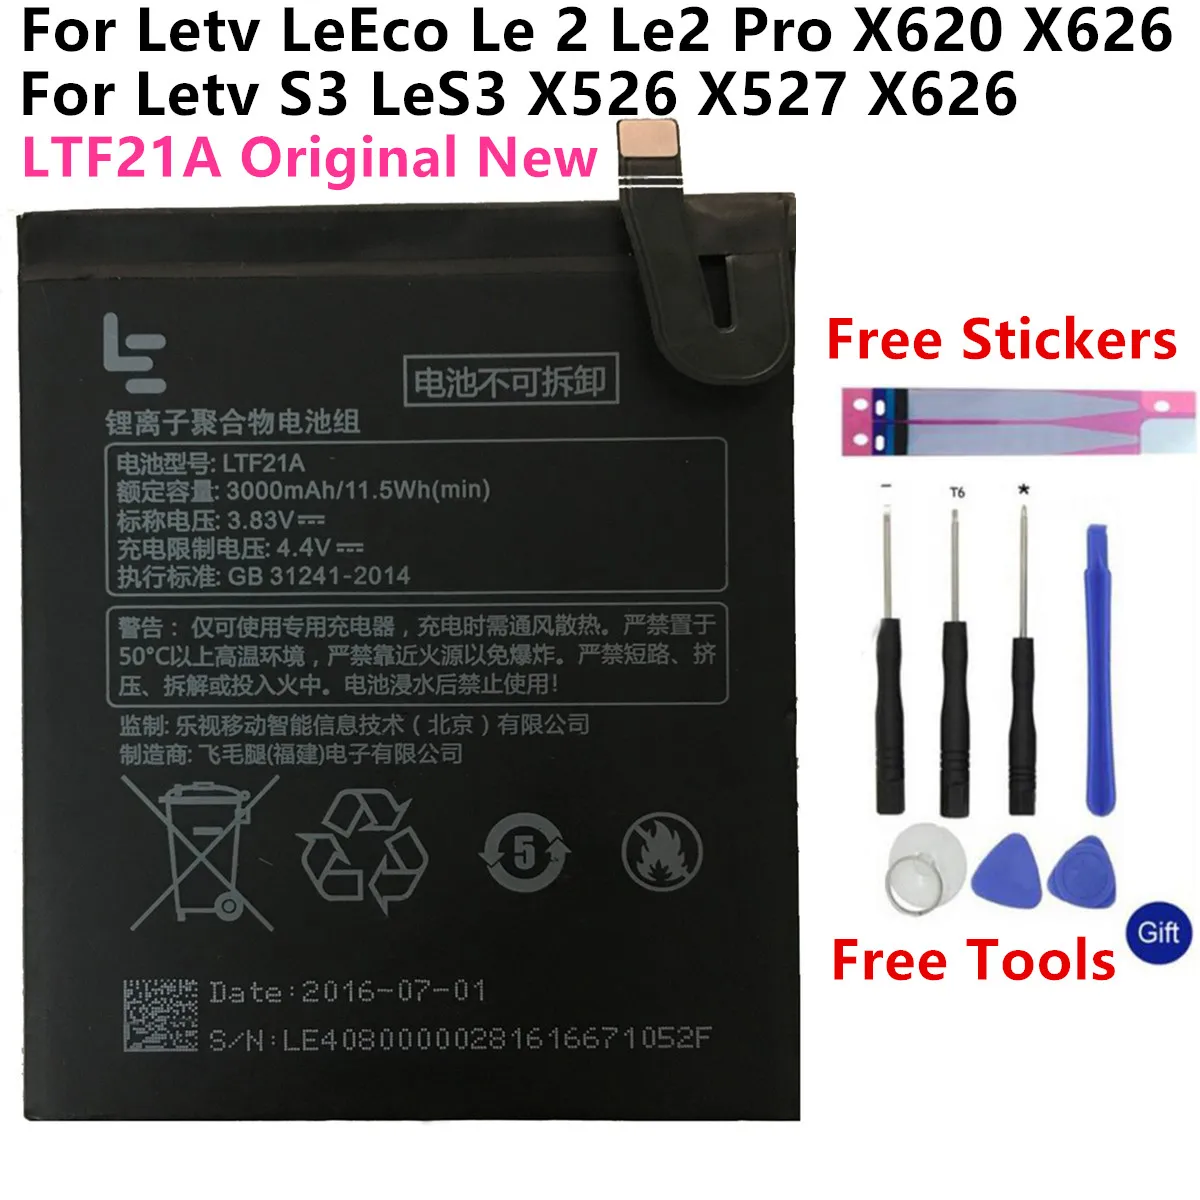 

Аккумулятор LTF21A 3000 мАч для Letv LeEco Le 2 X620, сменный аккумулятор LTF21A для Letv Le 2 Pro / Letv X526, сменный аккумулятор